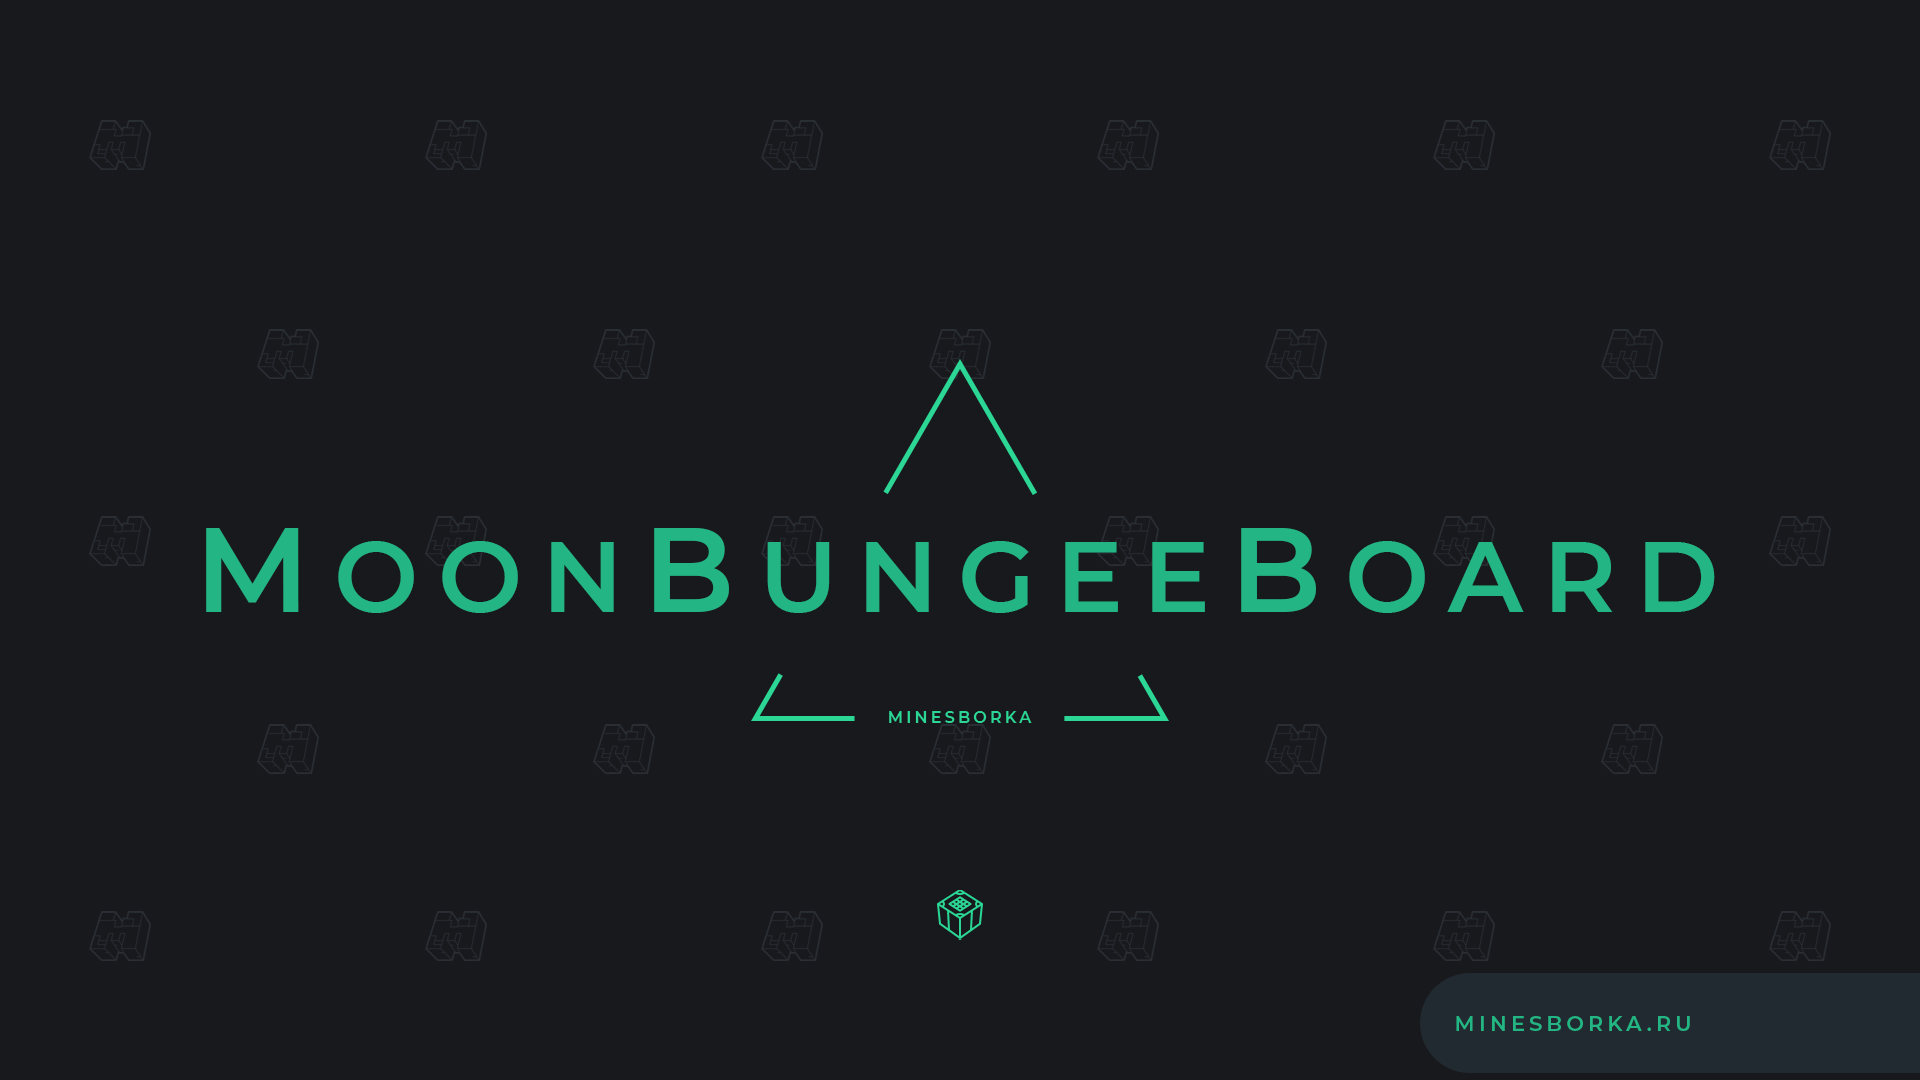 Скачать плагин MoonBungeeBoard | Табло с информацией в правой части экрана для BungeeCord сервера